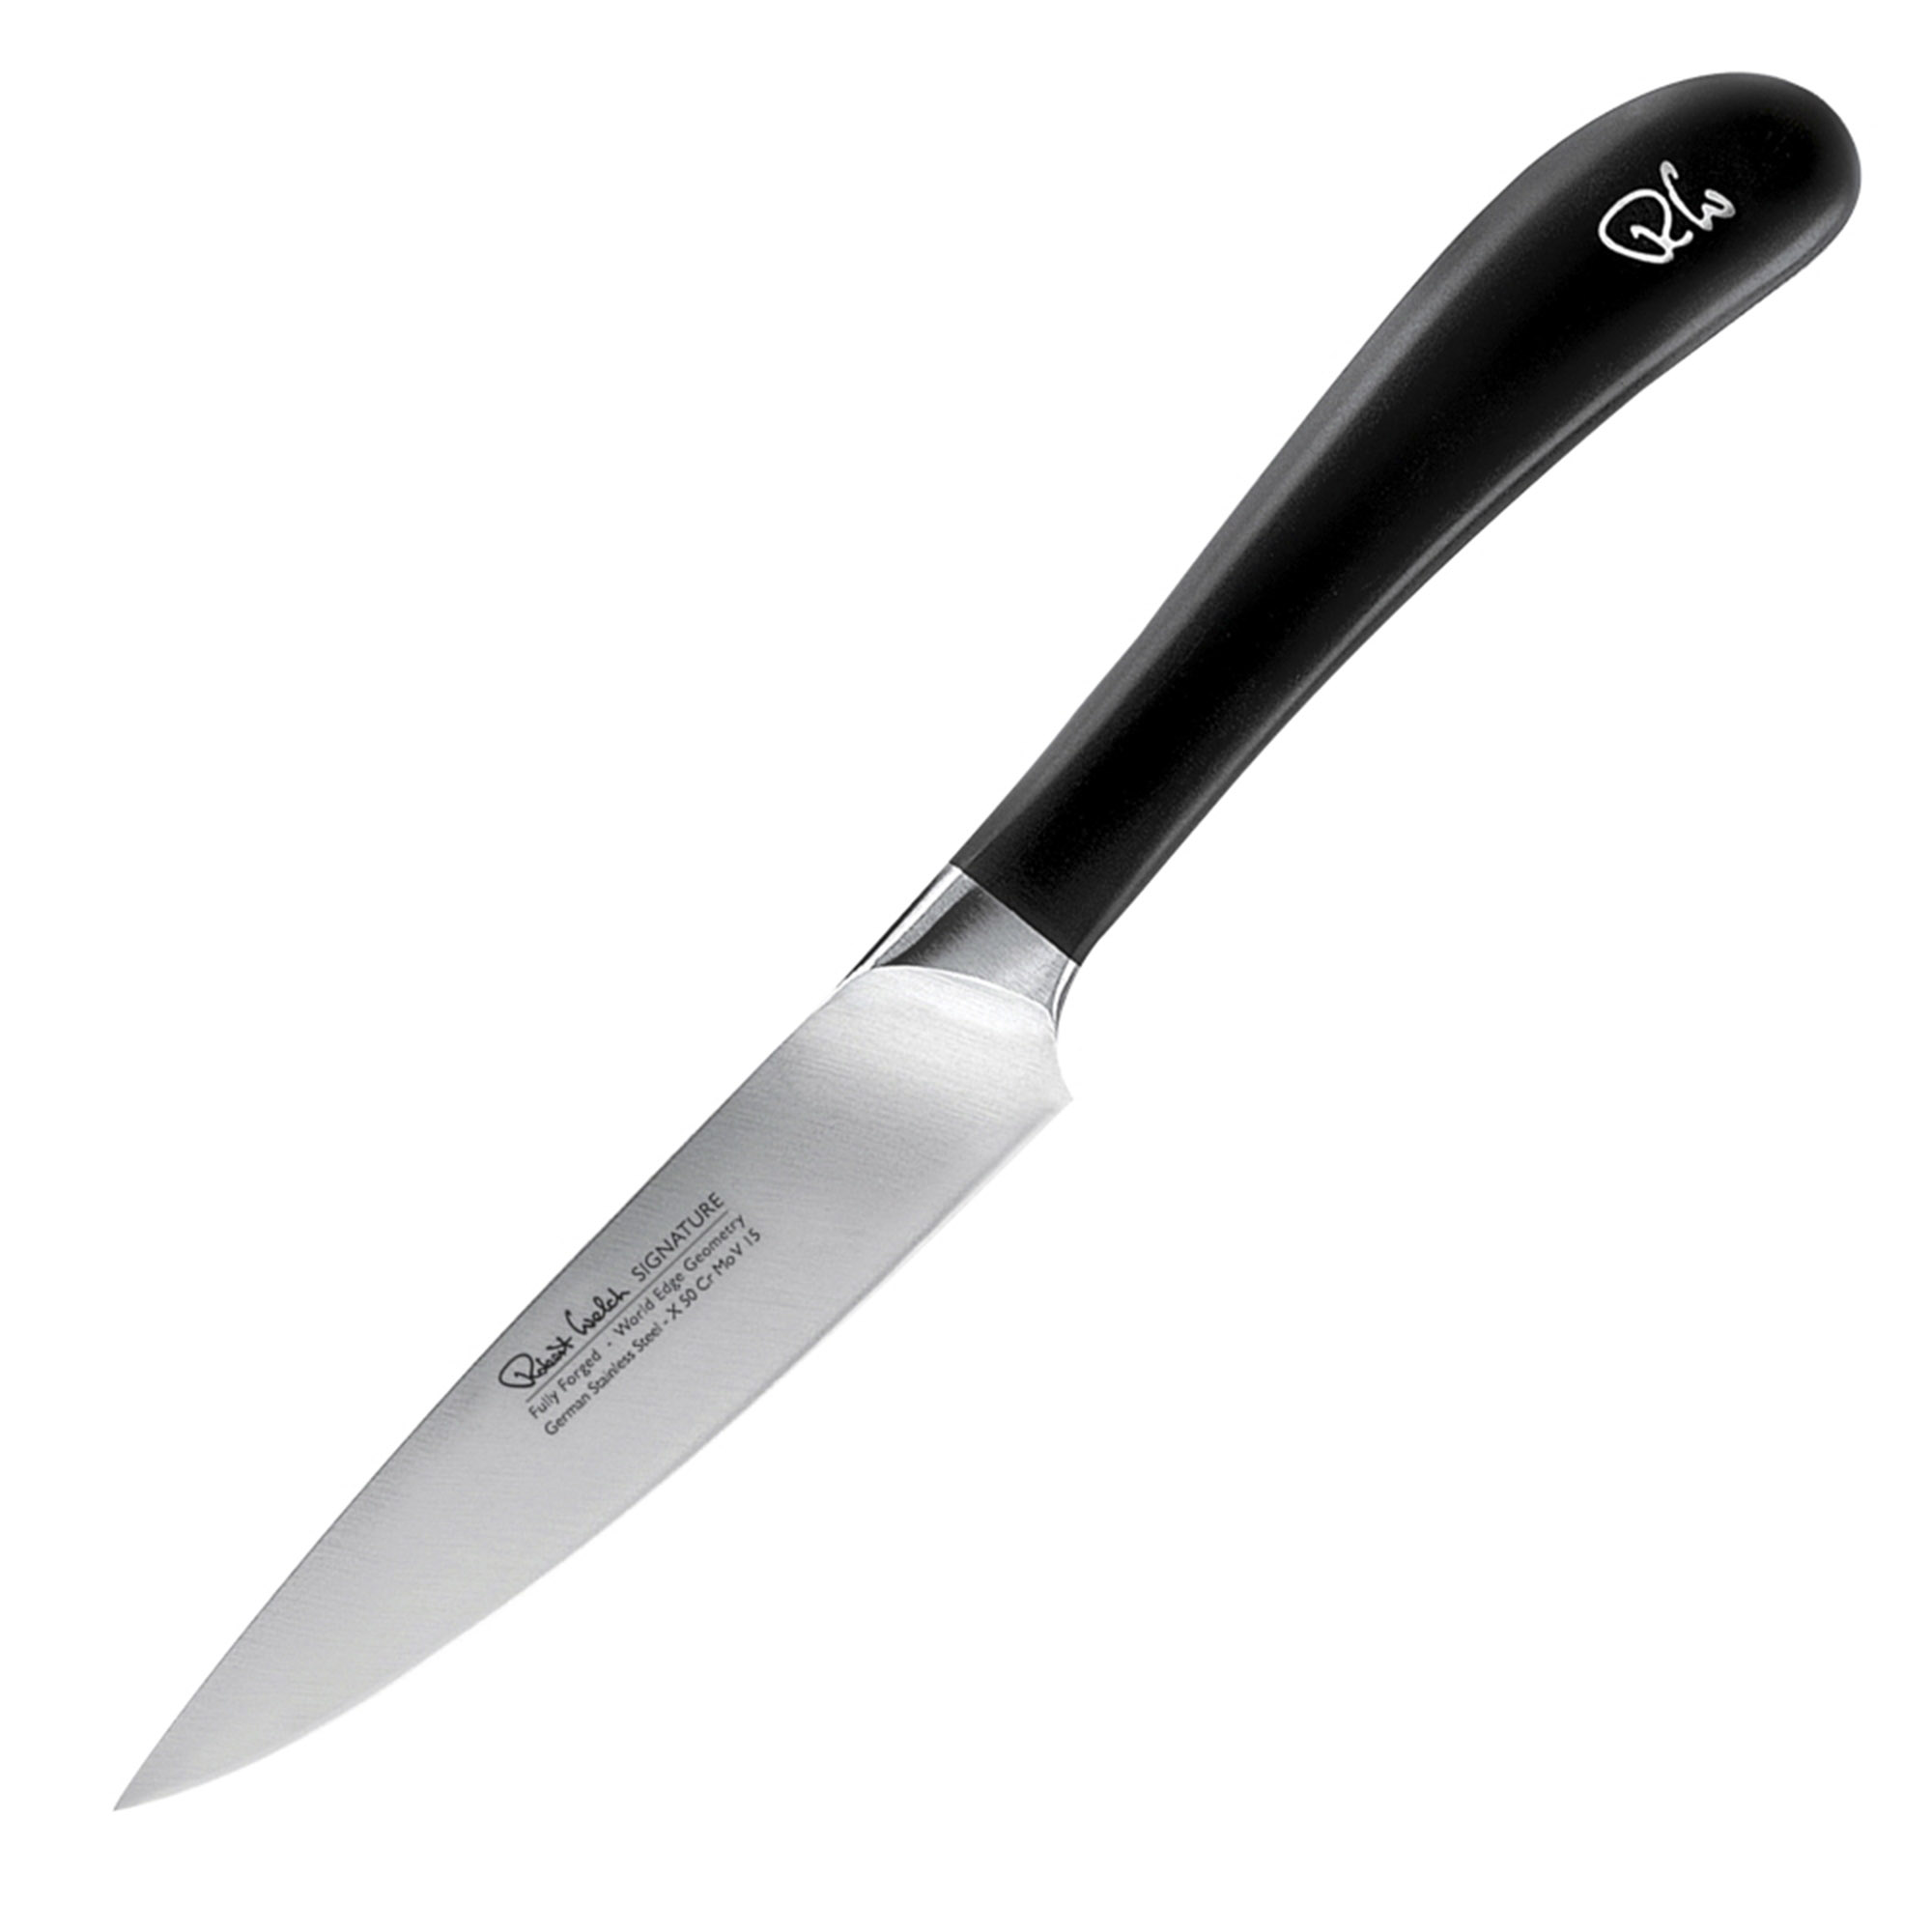 Нож кухонный овощной Robert Welch Signature 10 см кухонный нож для чистки овощей и фруктов robert welch signature 8 см